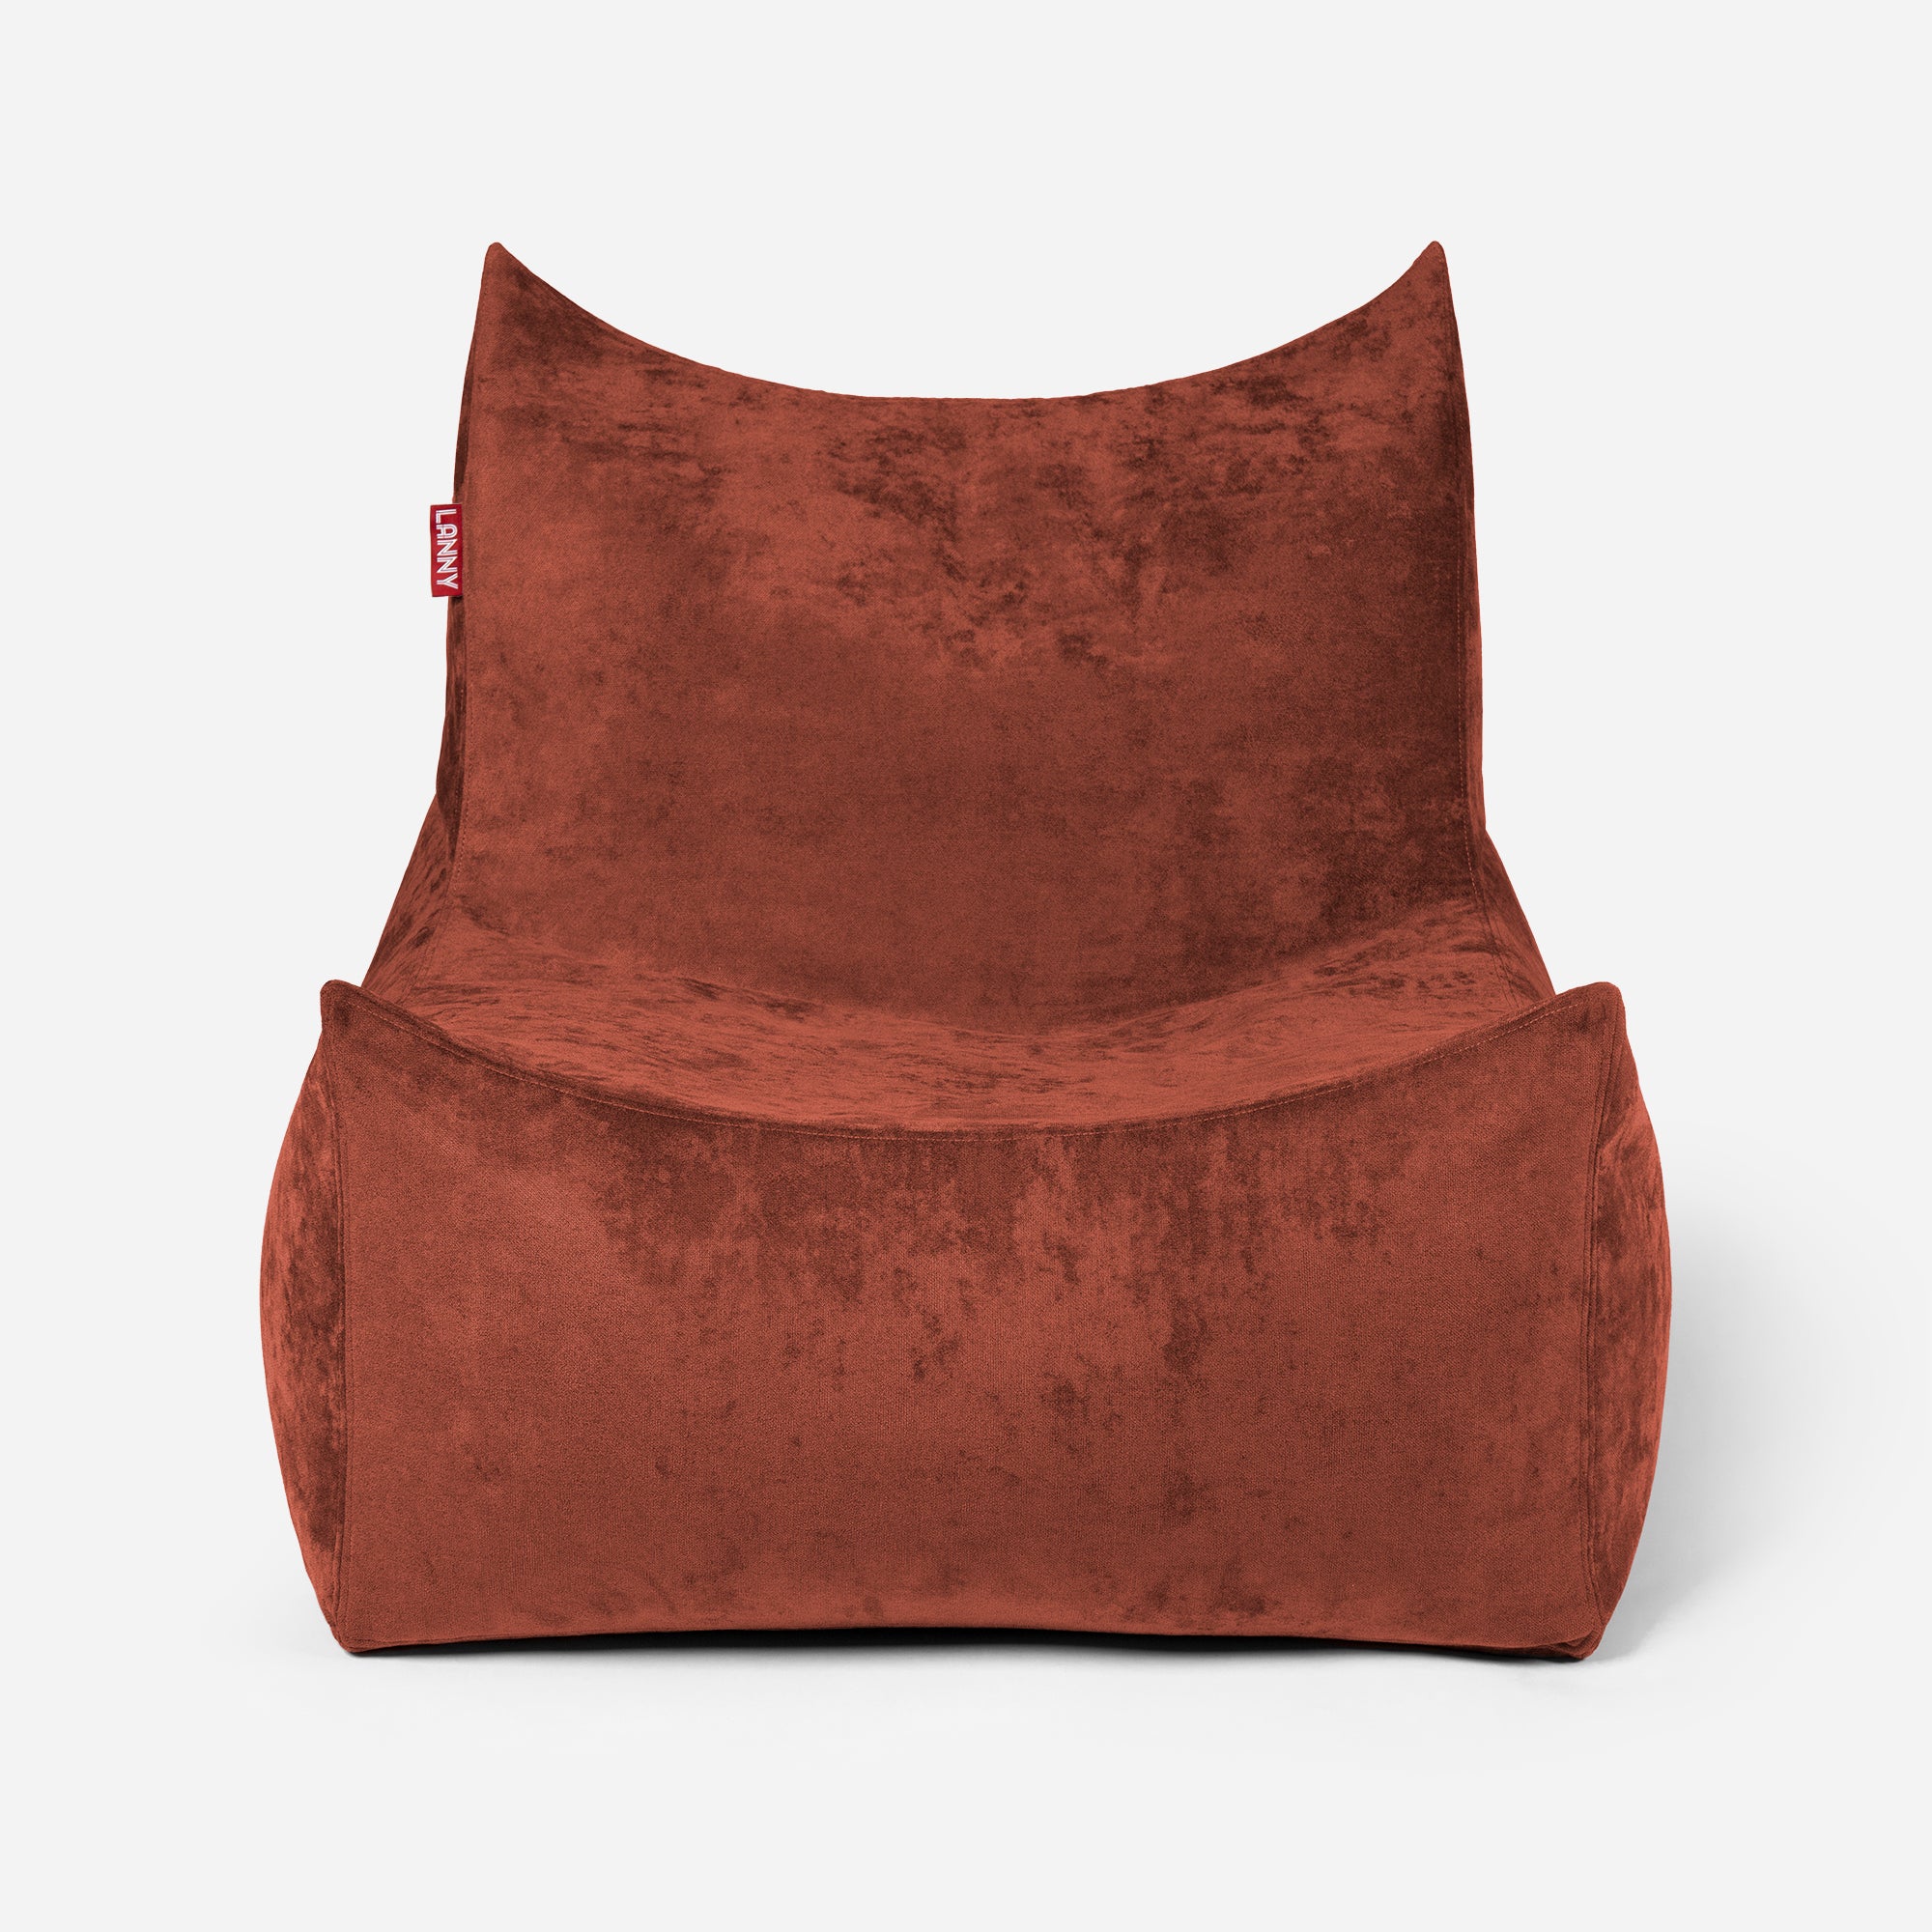 Quadro Aldo Amber Bean bag Chair